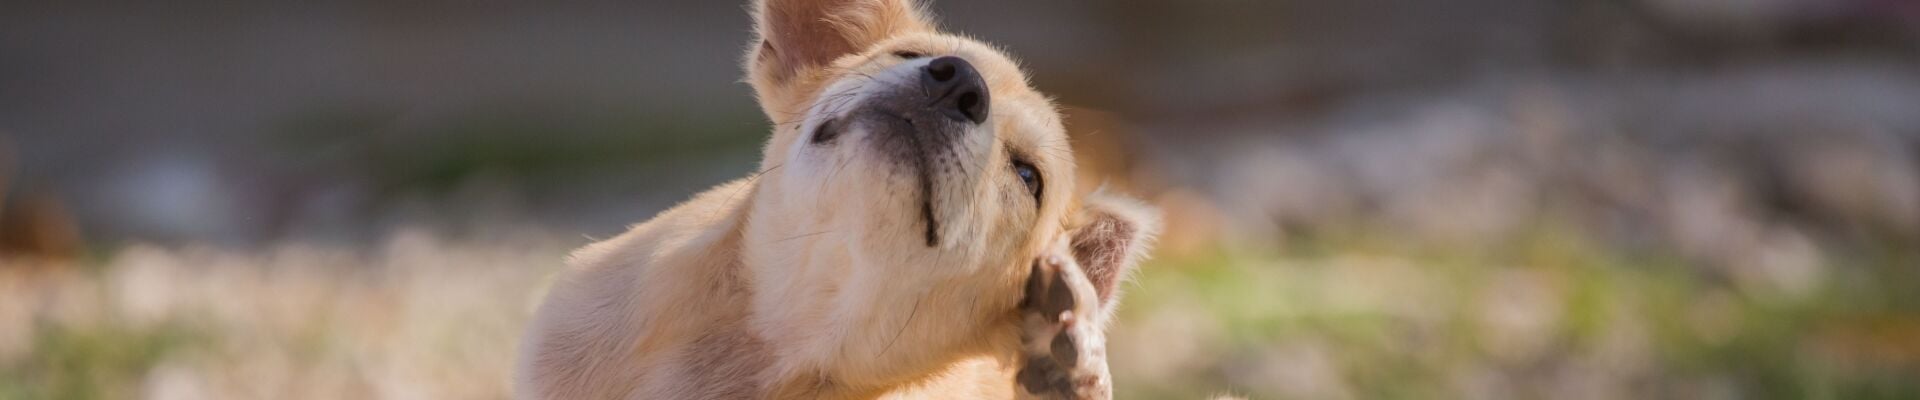 A golden retriever puppy scratching their ear